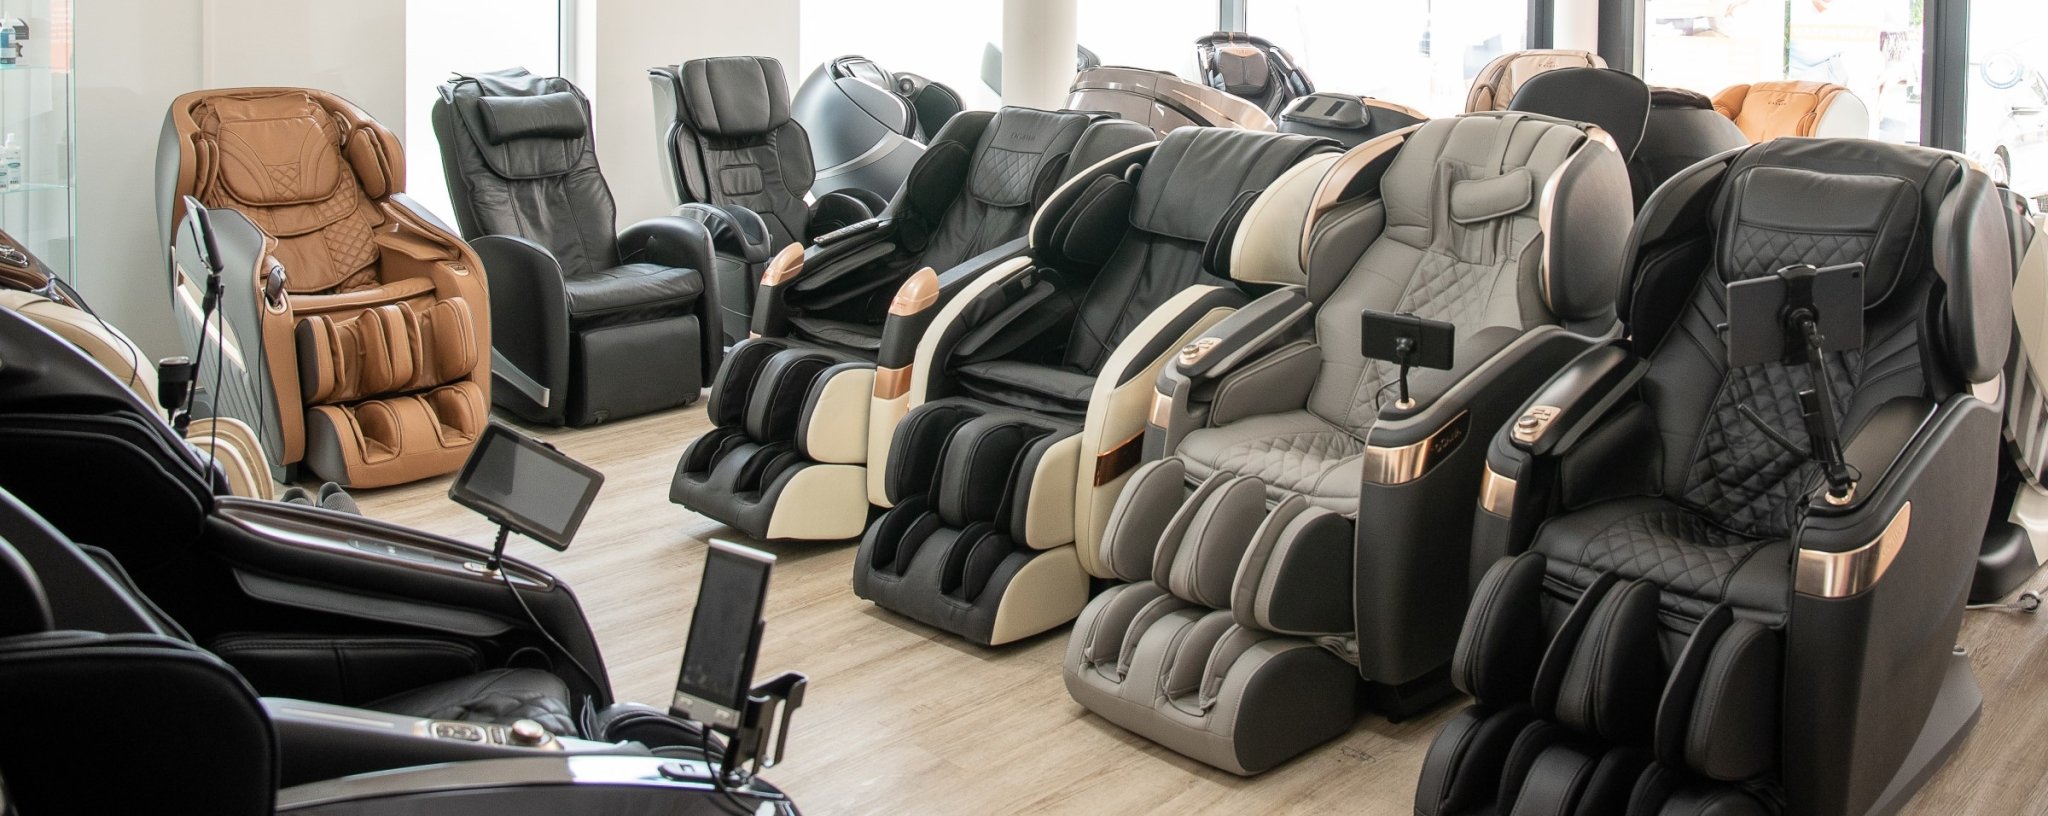 Triển lãm ghế massage lớn nhất của Đức và Châu Âu